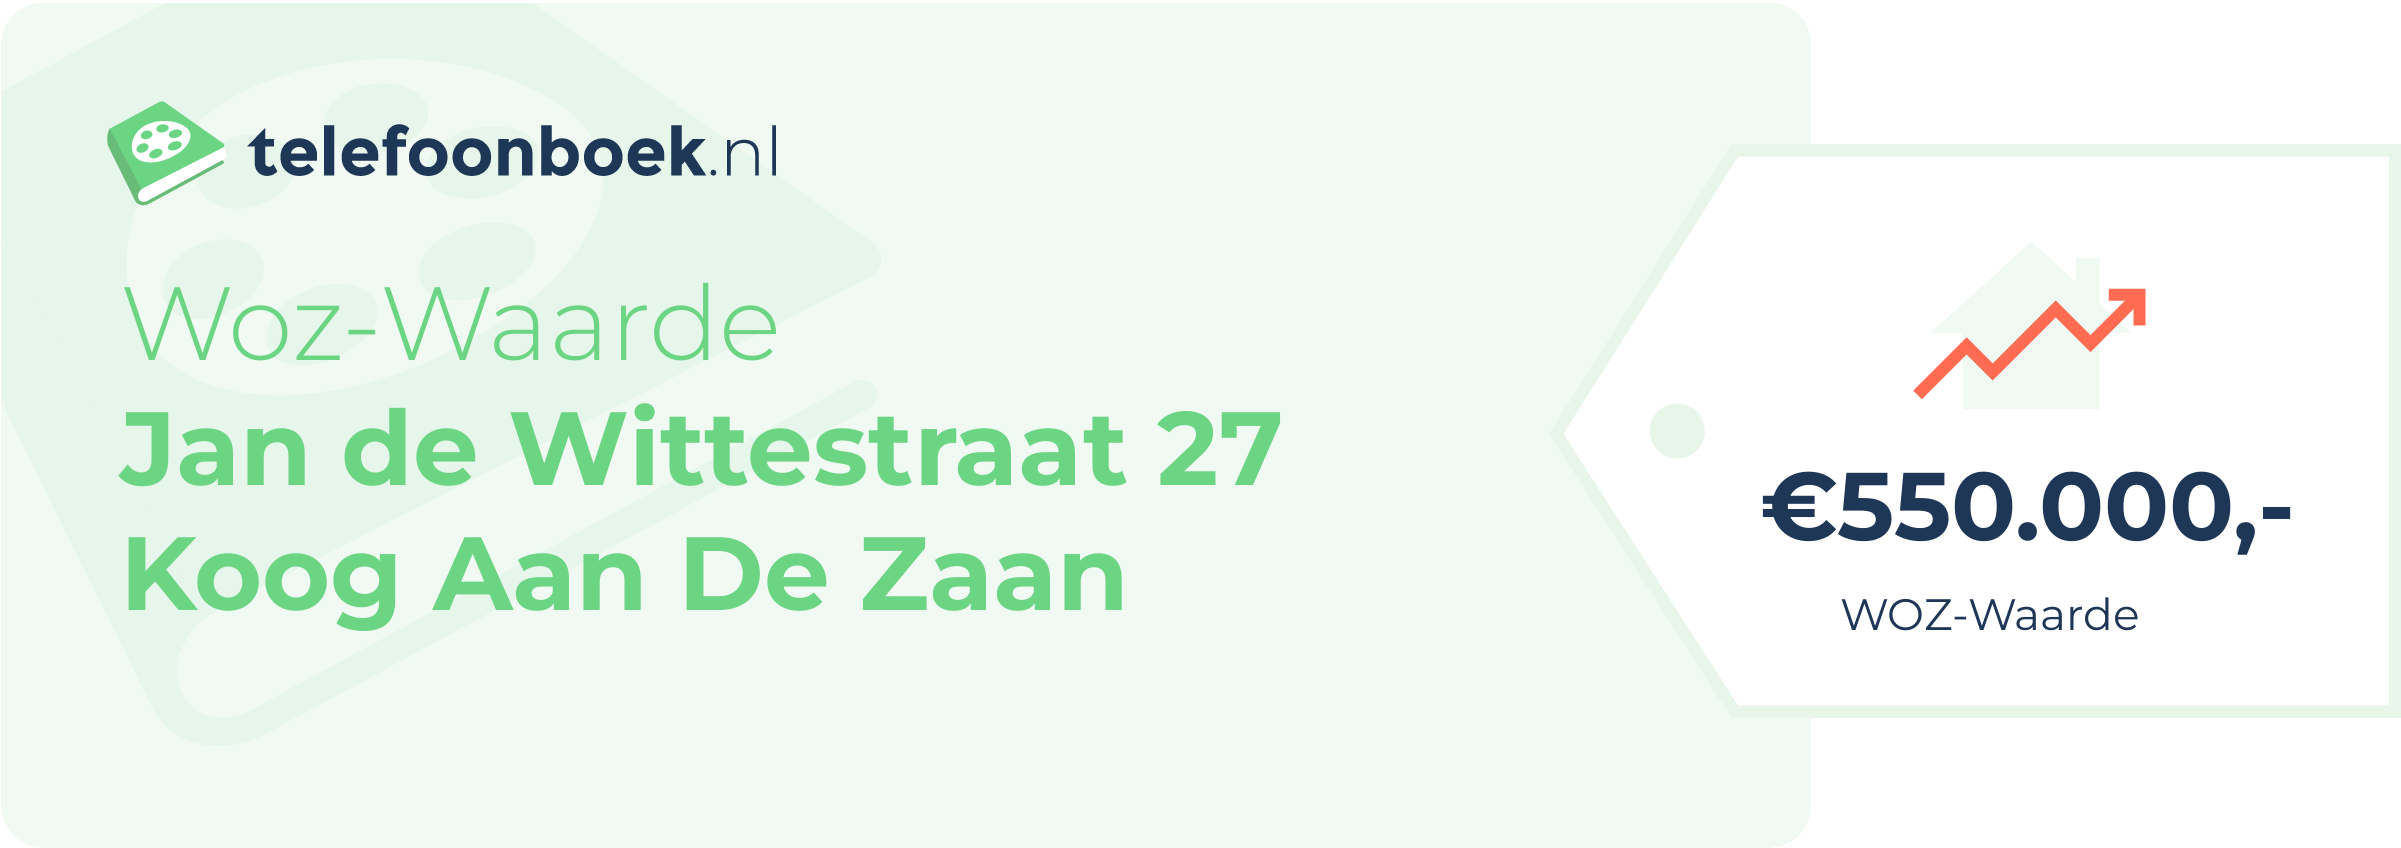 WOZ-waarde Jan De Wittestraat 27 Koog Aan De Zaan